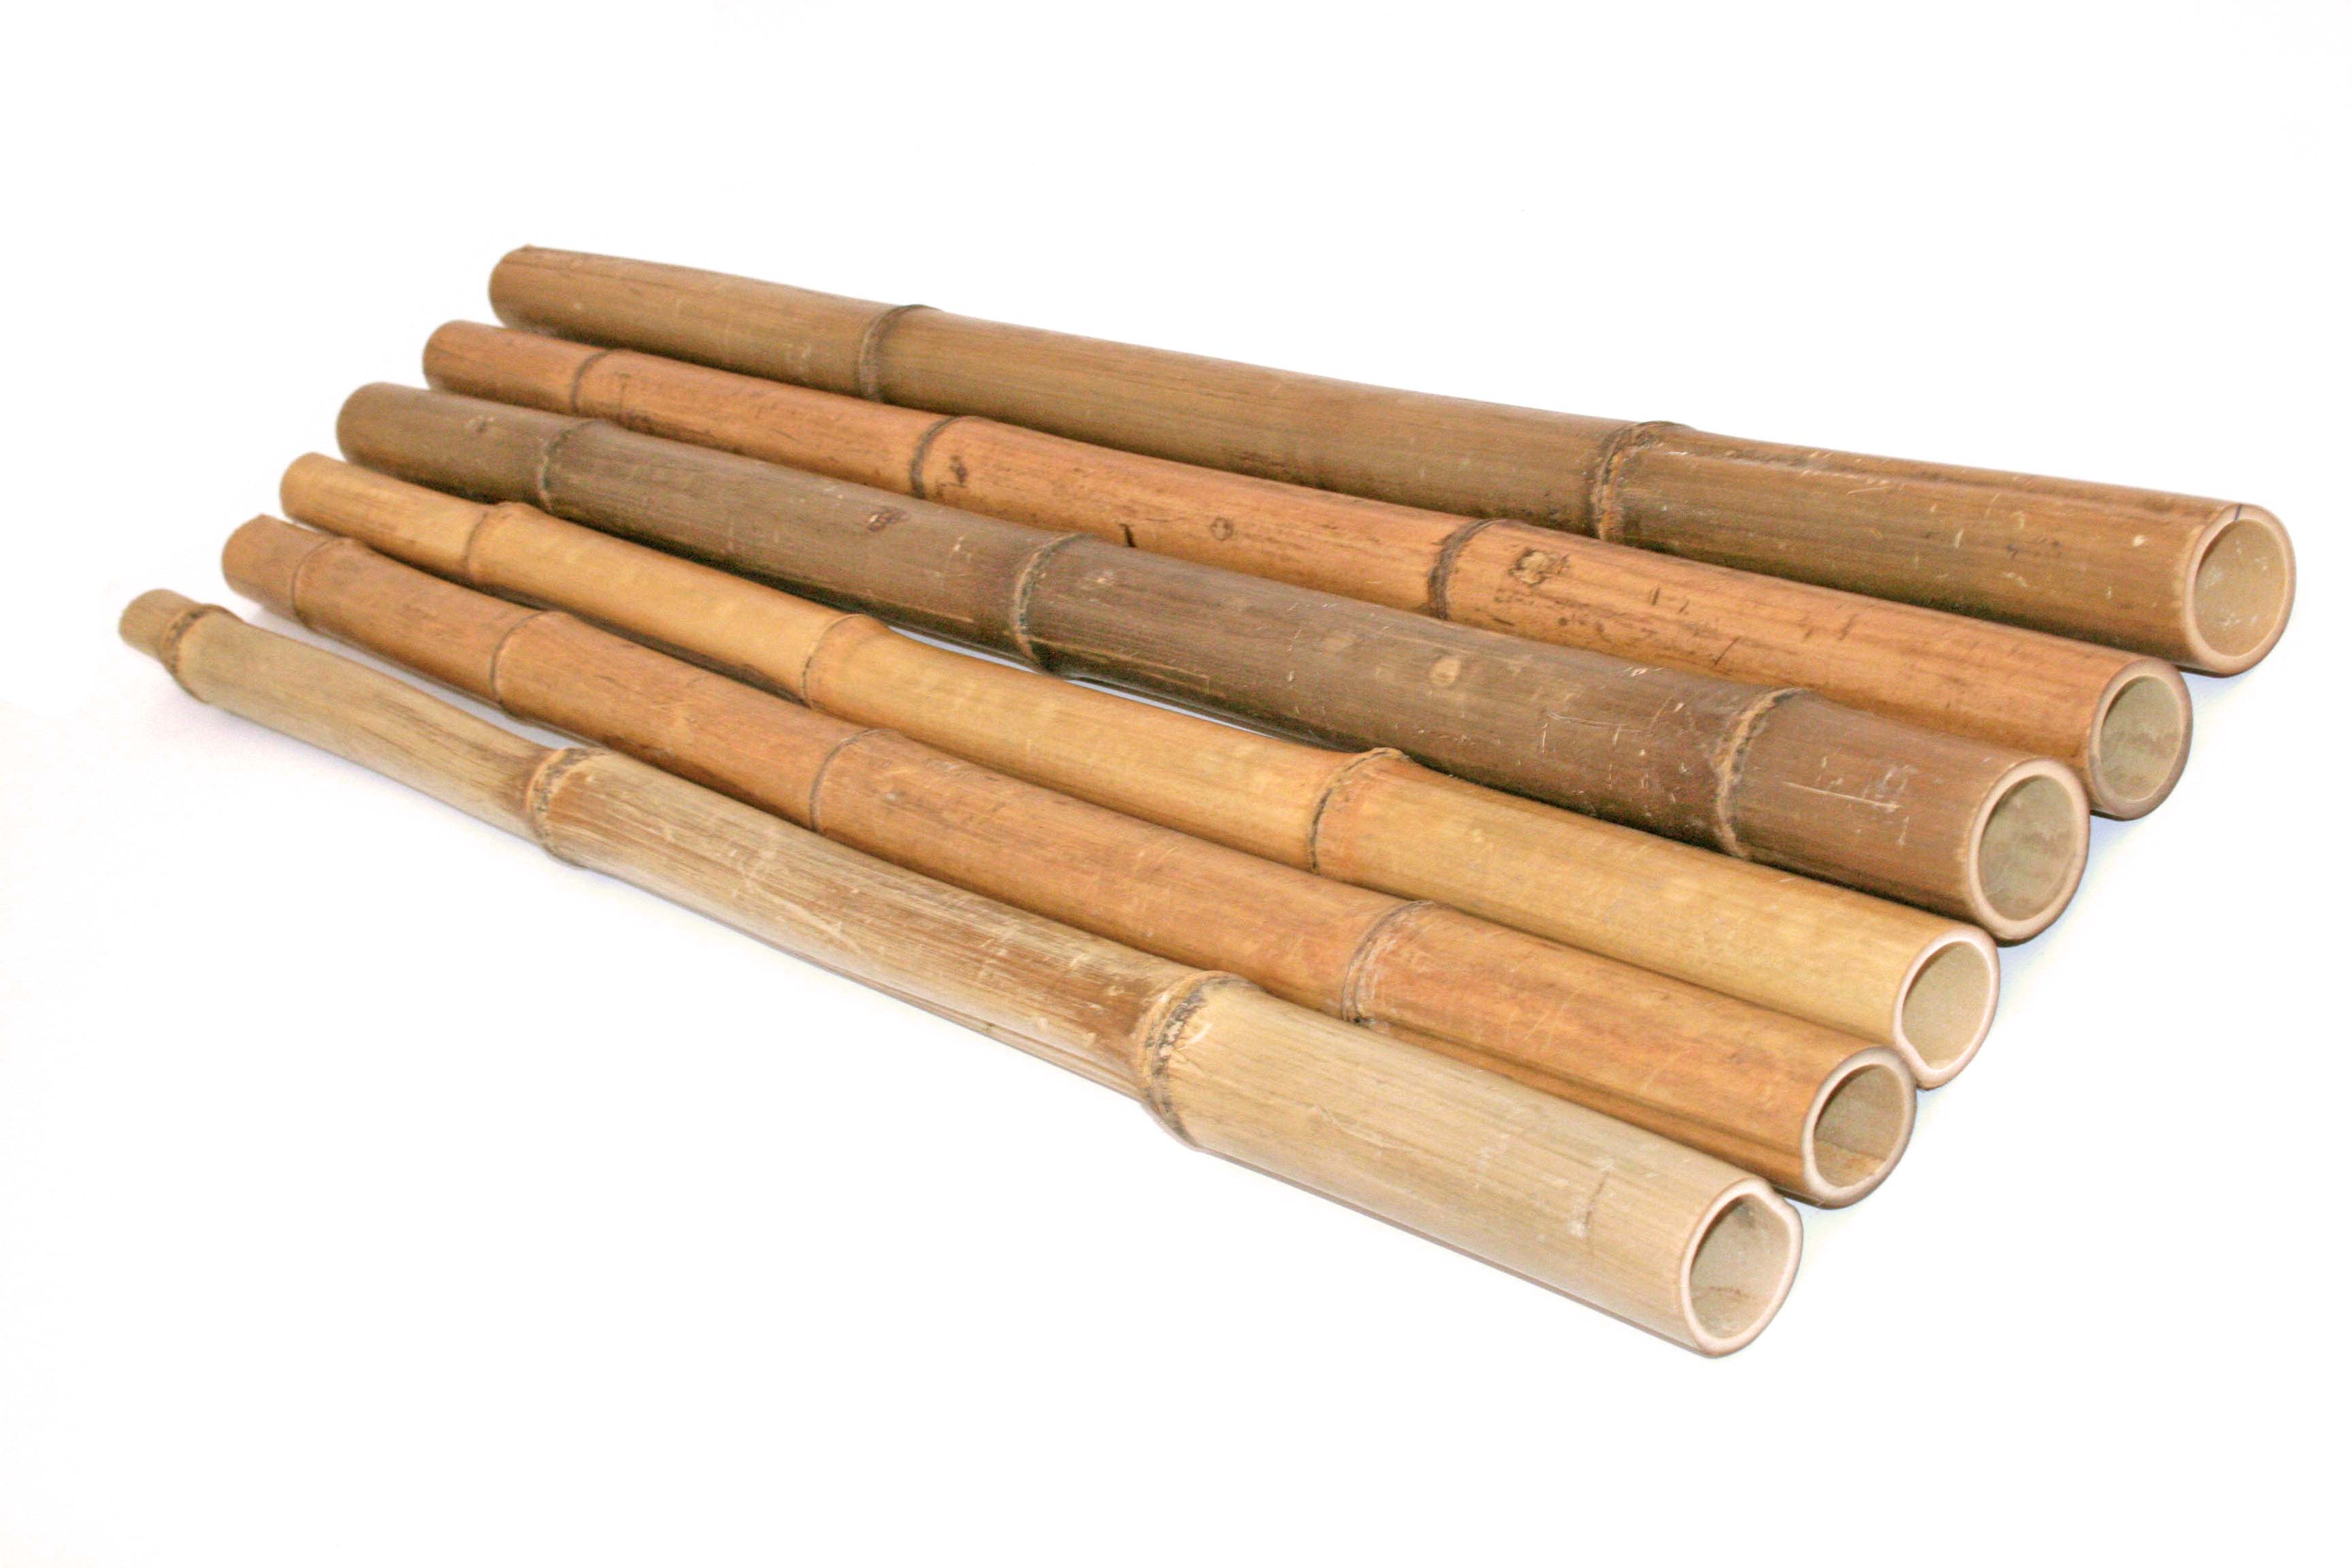 6 bis 7cm Madake hitzebehandelt Bambus Bambus Rohr Bambusrohre Bamboo Bambusstangen Bambusrohr 300cm gelbbraun Durch 